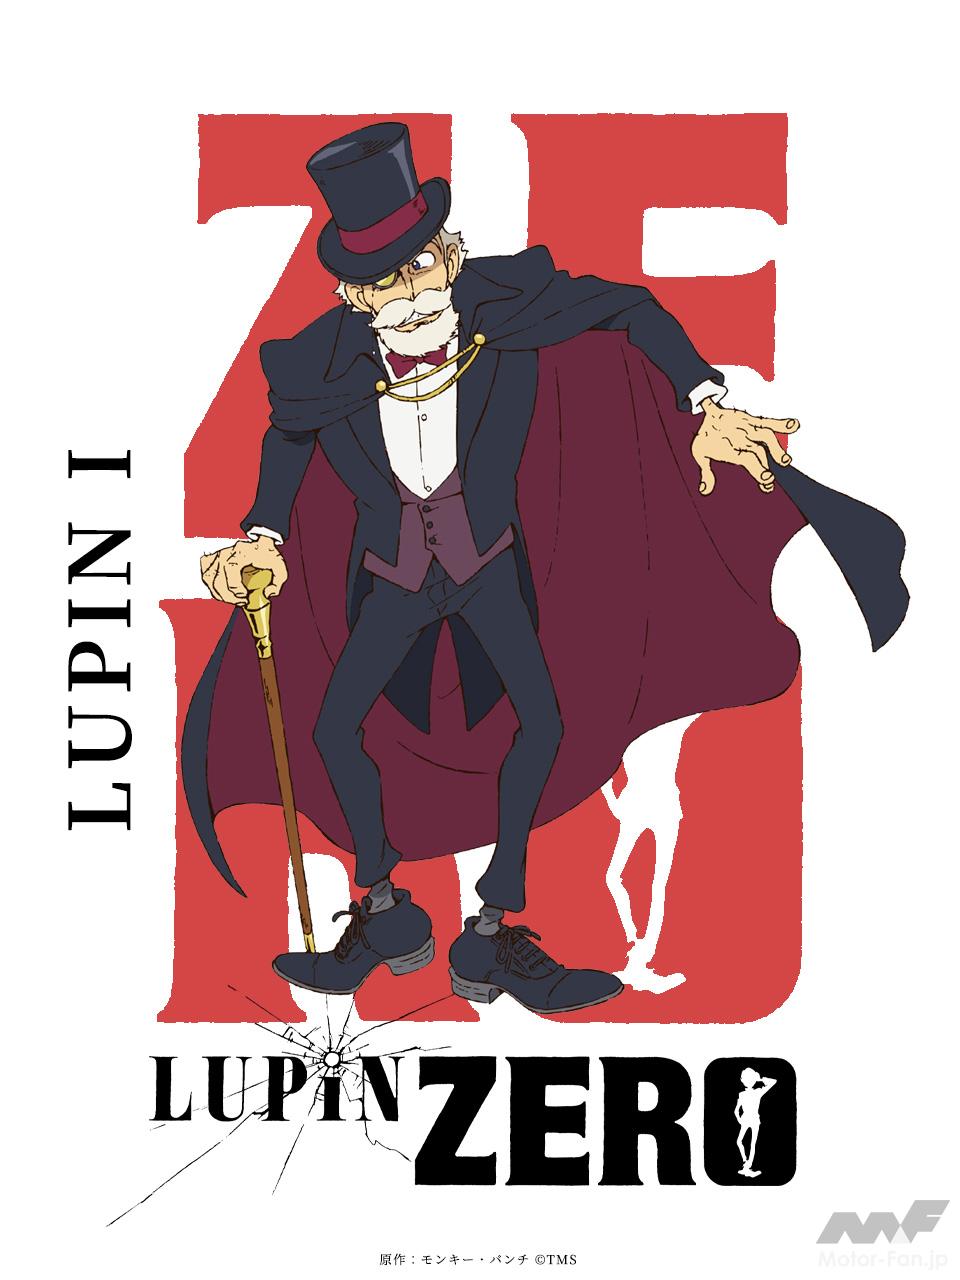 ヤング”ルパン”を描いた『LUPIN ZERO』は、宮崎 駿監督による名作